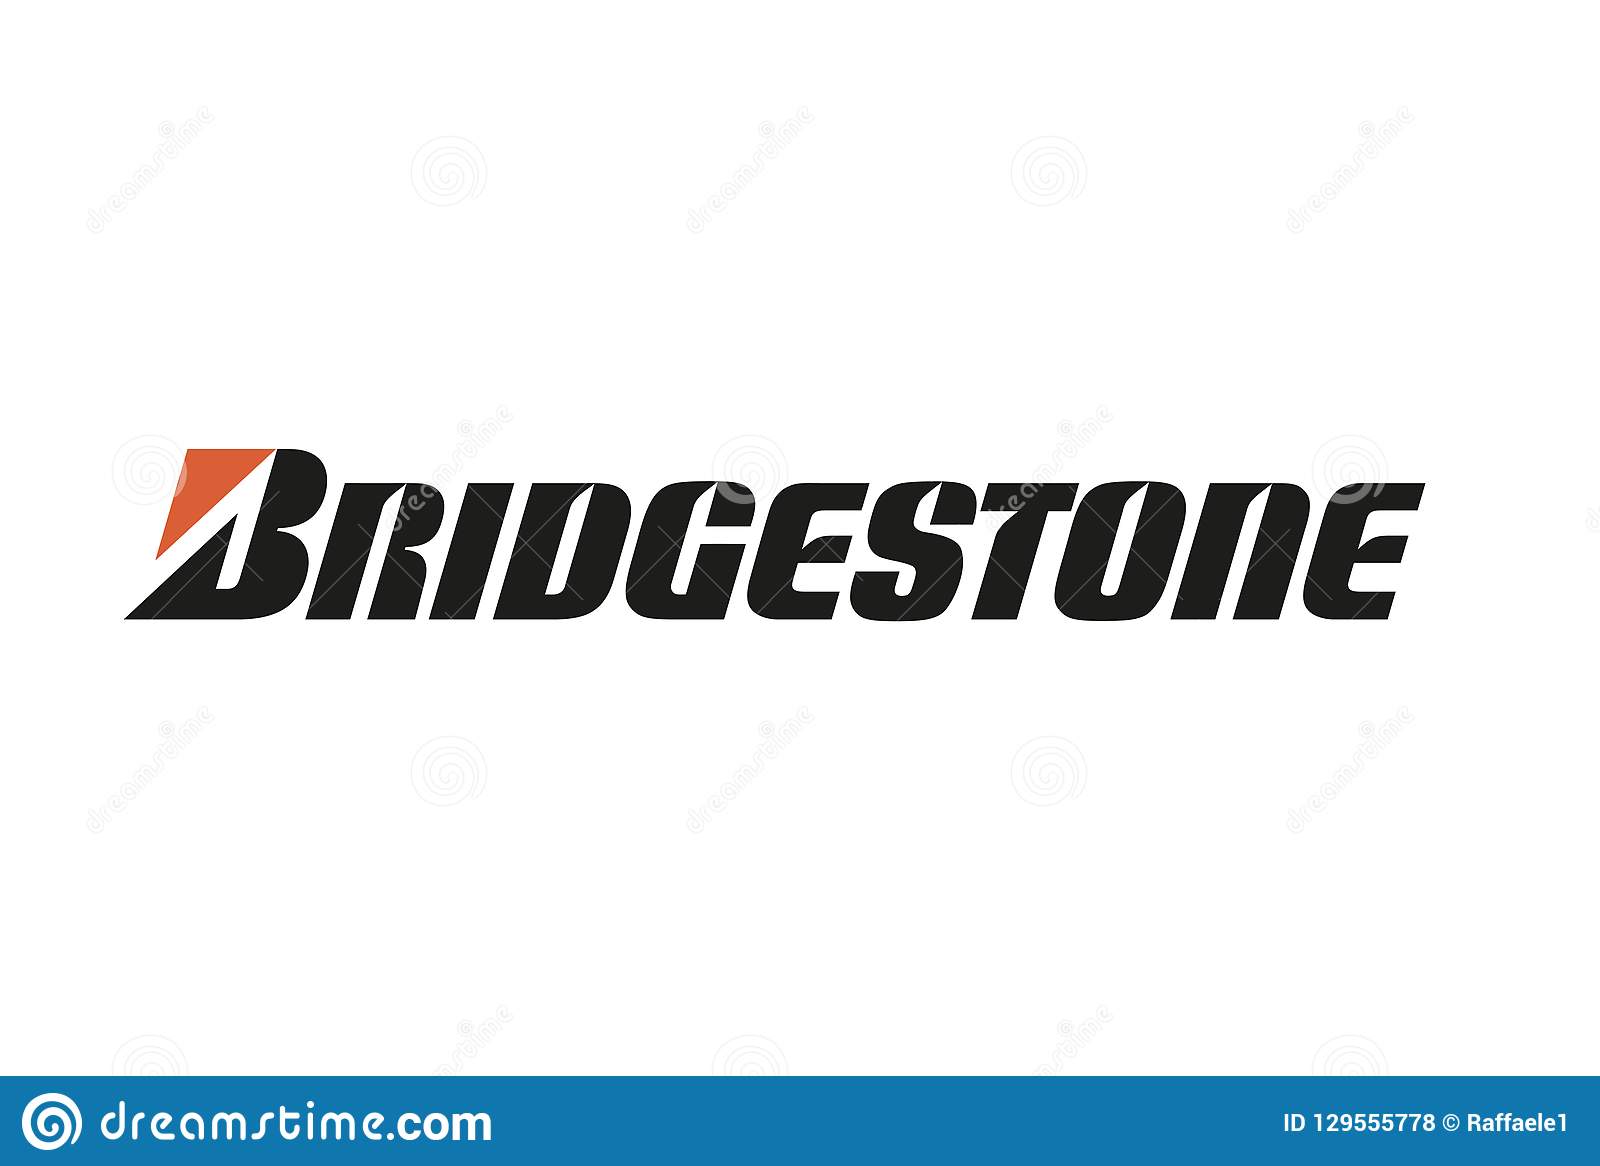 Bridgestone-მა განახლებული ლოგო წარადგინა